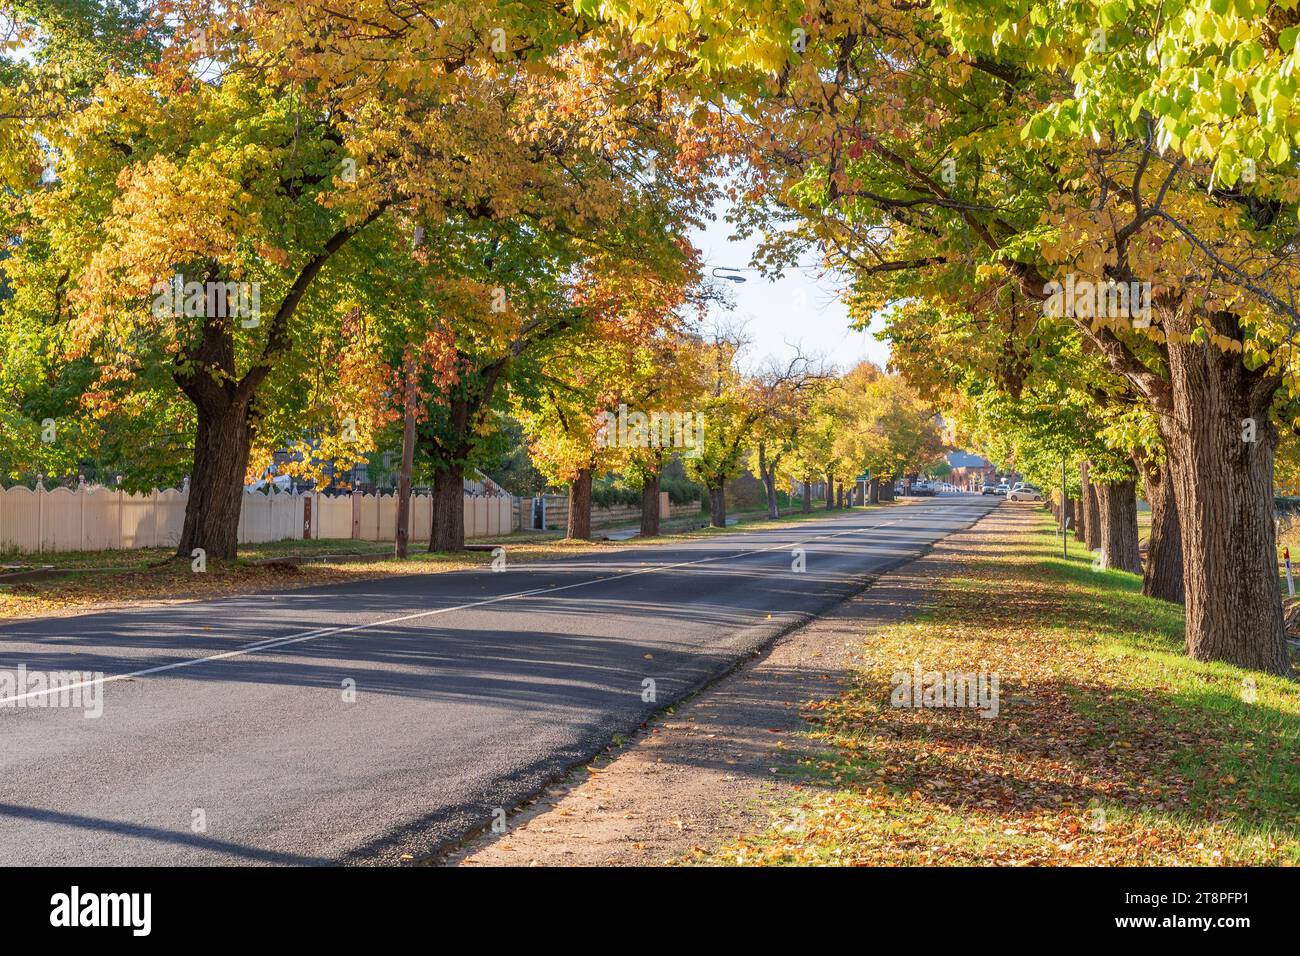 Eine lange, gerade Straße in Maldon im Zentrum von Victoria, Australien, gesäumt von Ulmen in Herbstfarben. Stockfoto